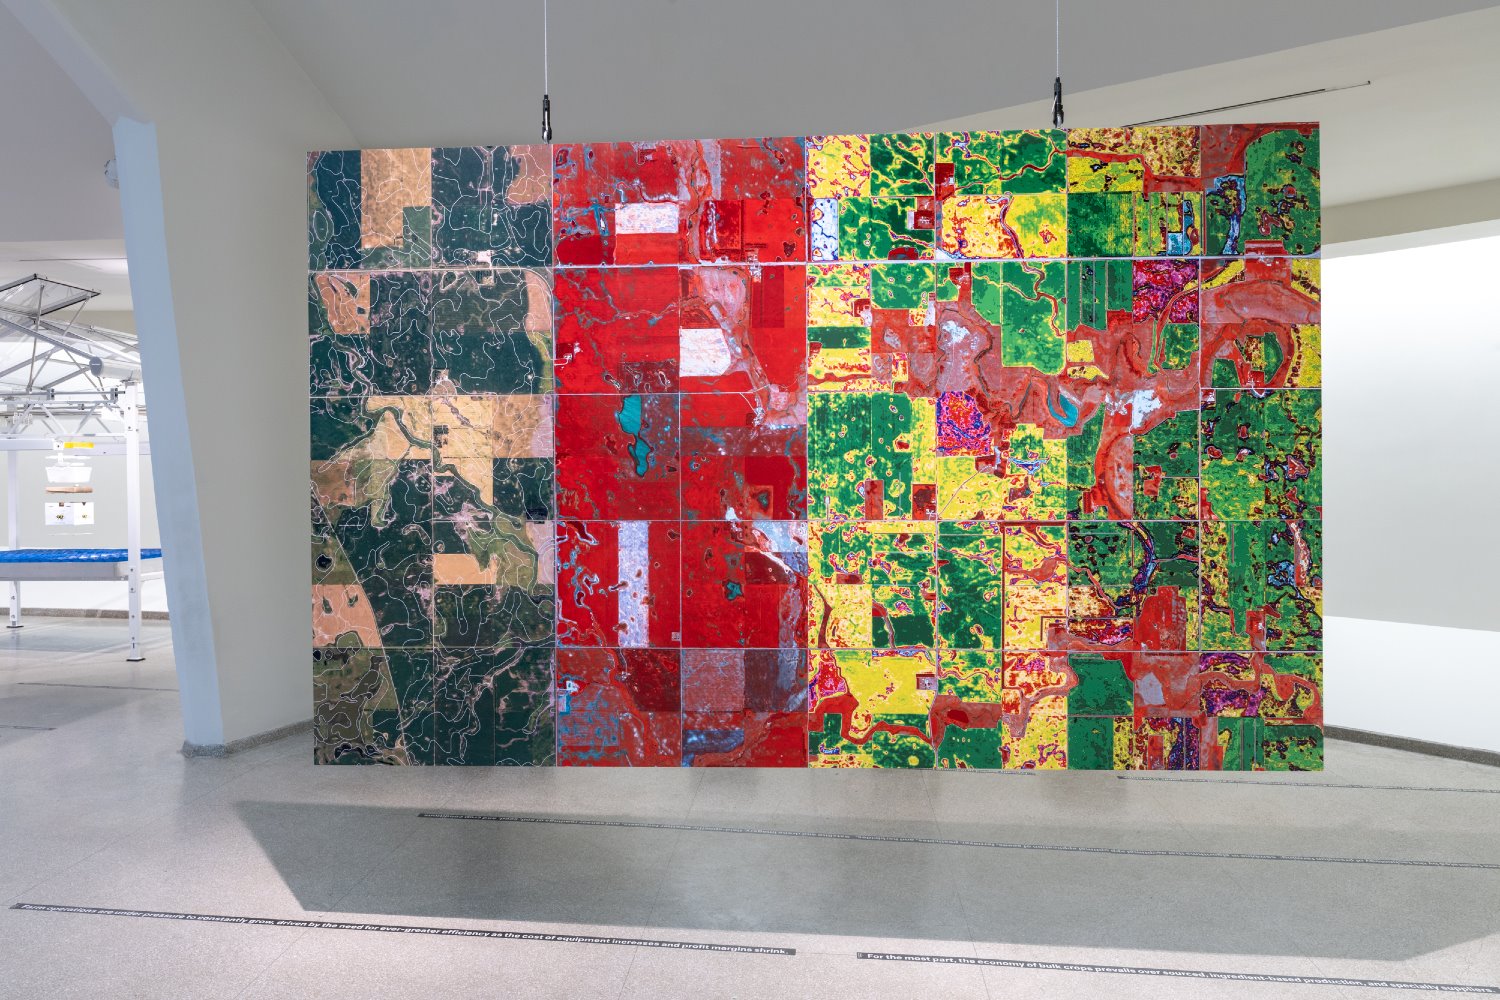 Exposición Countryside The Future en el Guggenheim de Nueva York de Rem Koolhaas y Samir Bantal OMA 